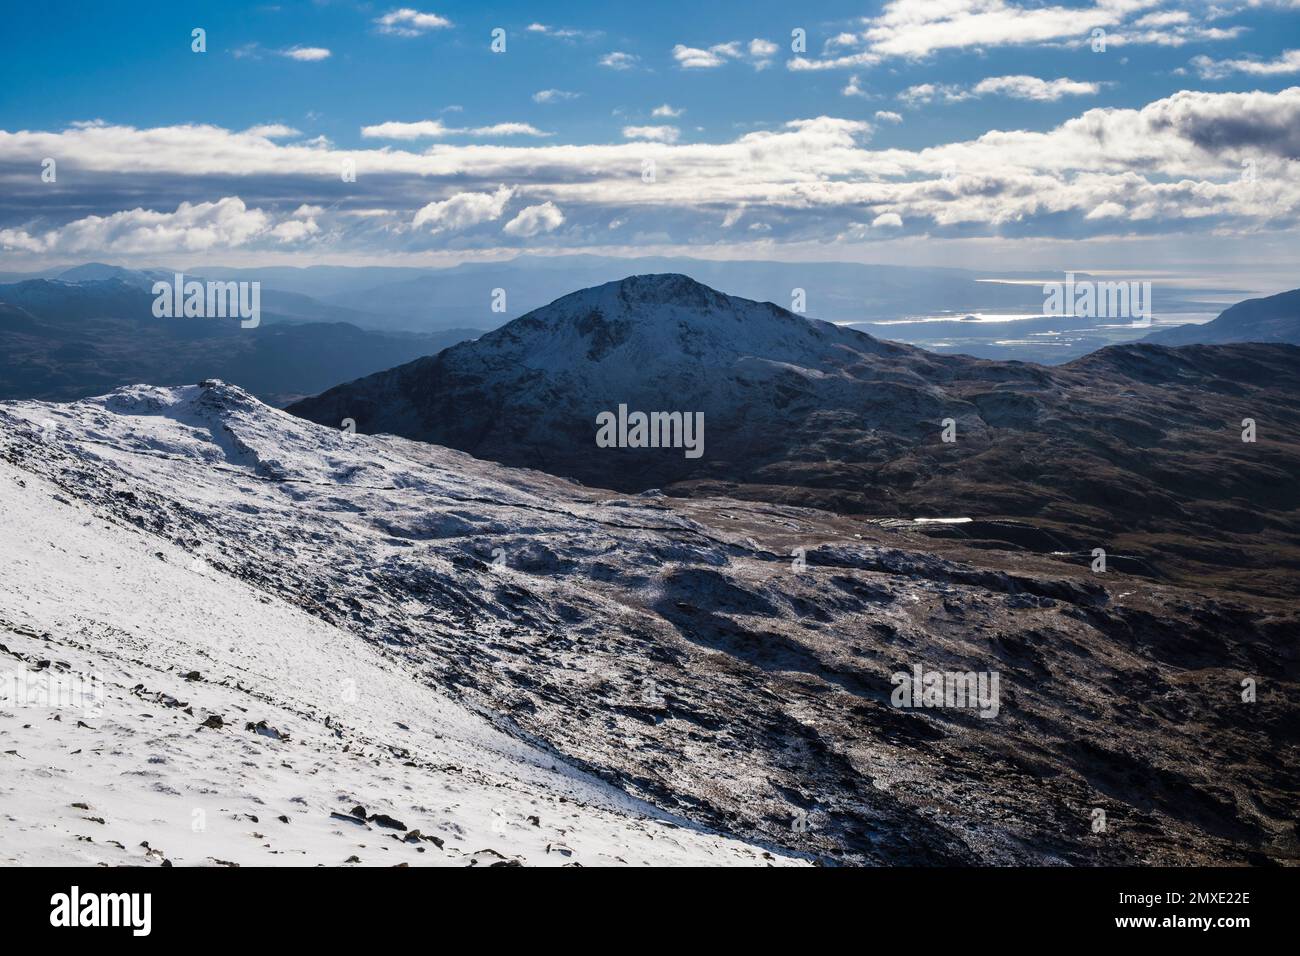 Vue sur Yr Aran et la côte depuis le chemin Rhyd DDU sur les pentes du mont Snowdon en hiver dans les montagnes du parc national de Snowdonia. Rhyd DDU Gwynedd pays de Galles Royaume-Uni Banque D'Images